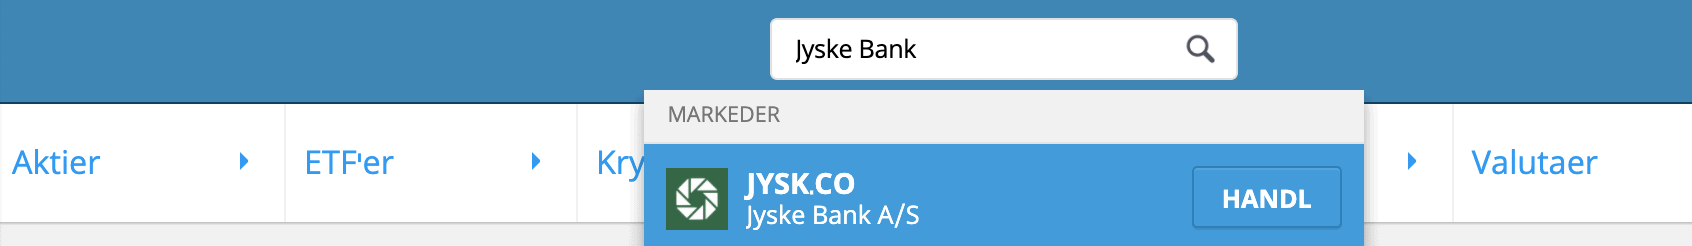 Soeg Efter Jyske Bank Aktier